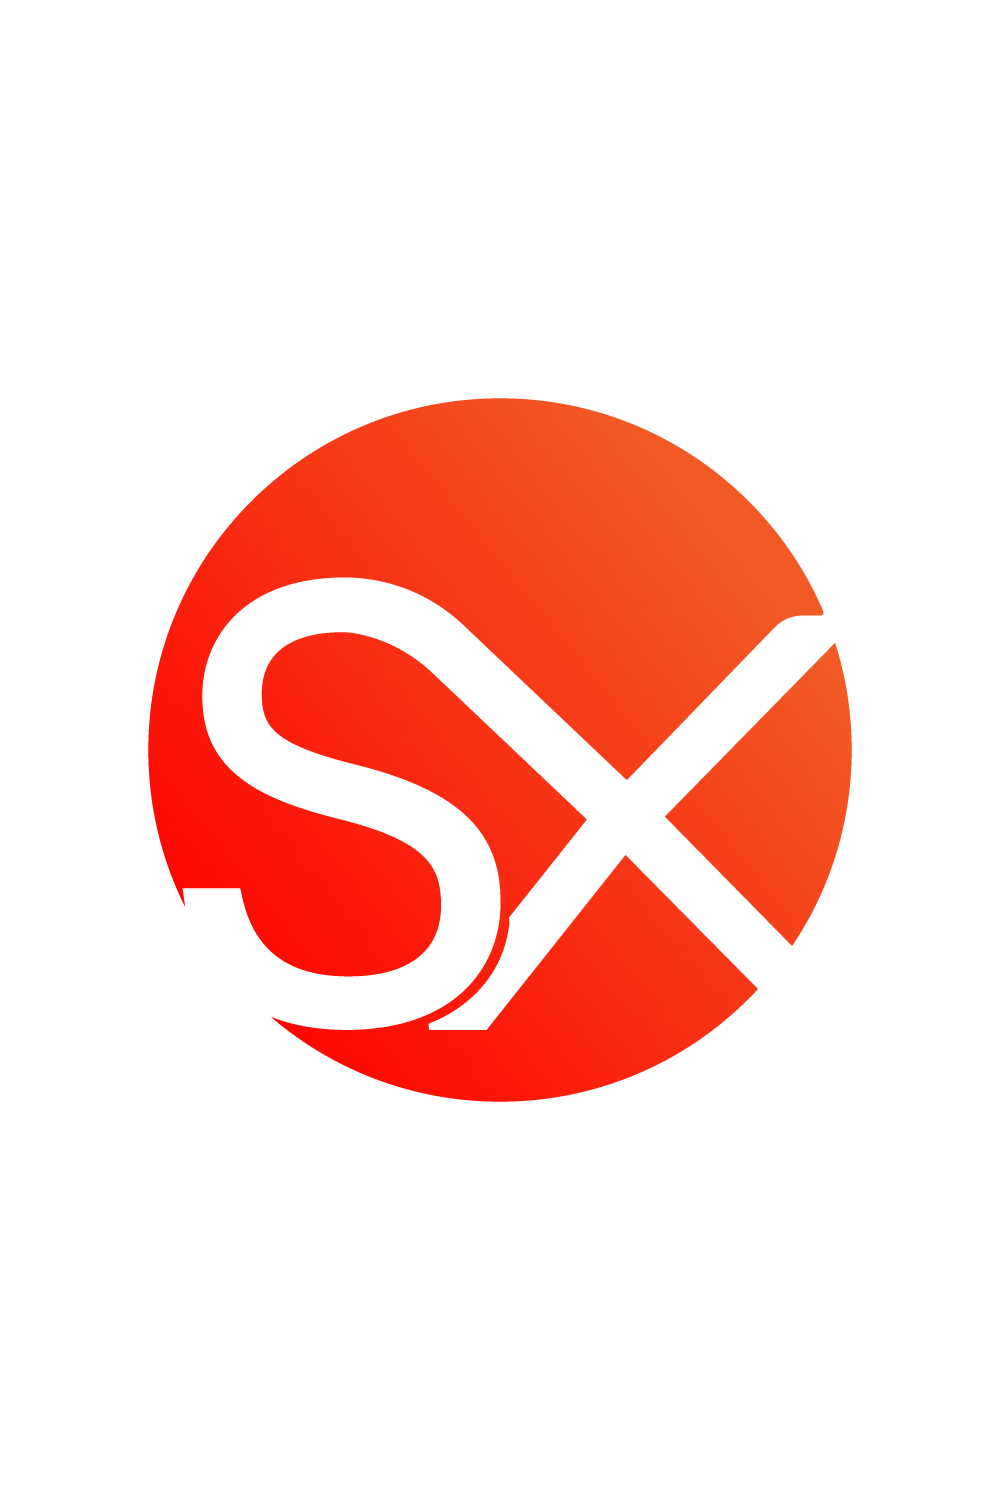 Initials SX letters logo design vector template images SX logo orange color logo design XS logo monogram design pinterest preview image.